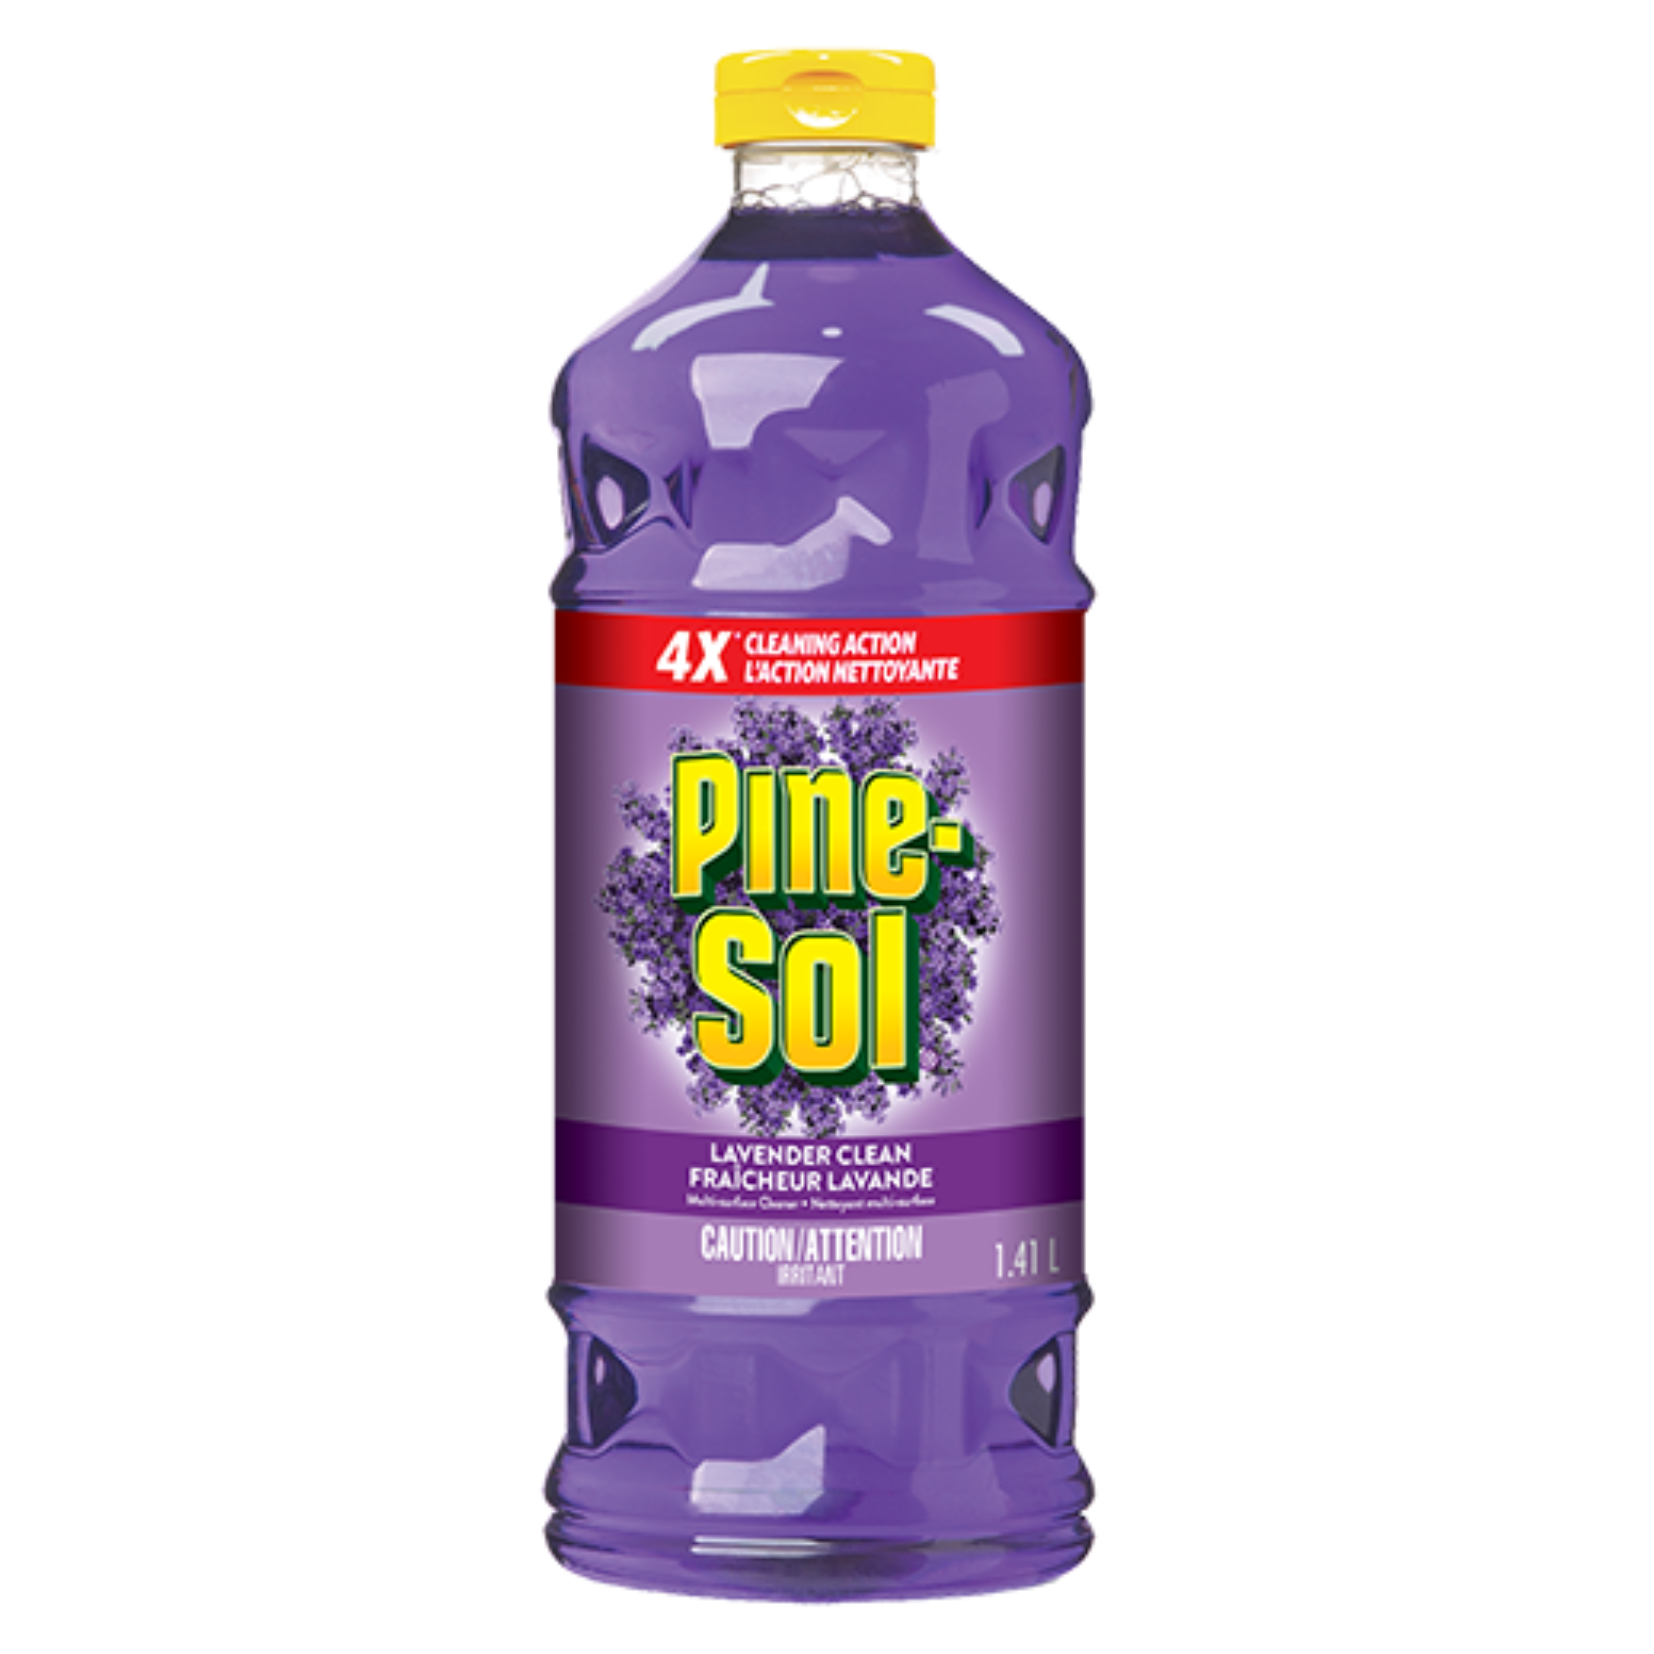 Pine Sol Lavender Cleaner 1.41L